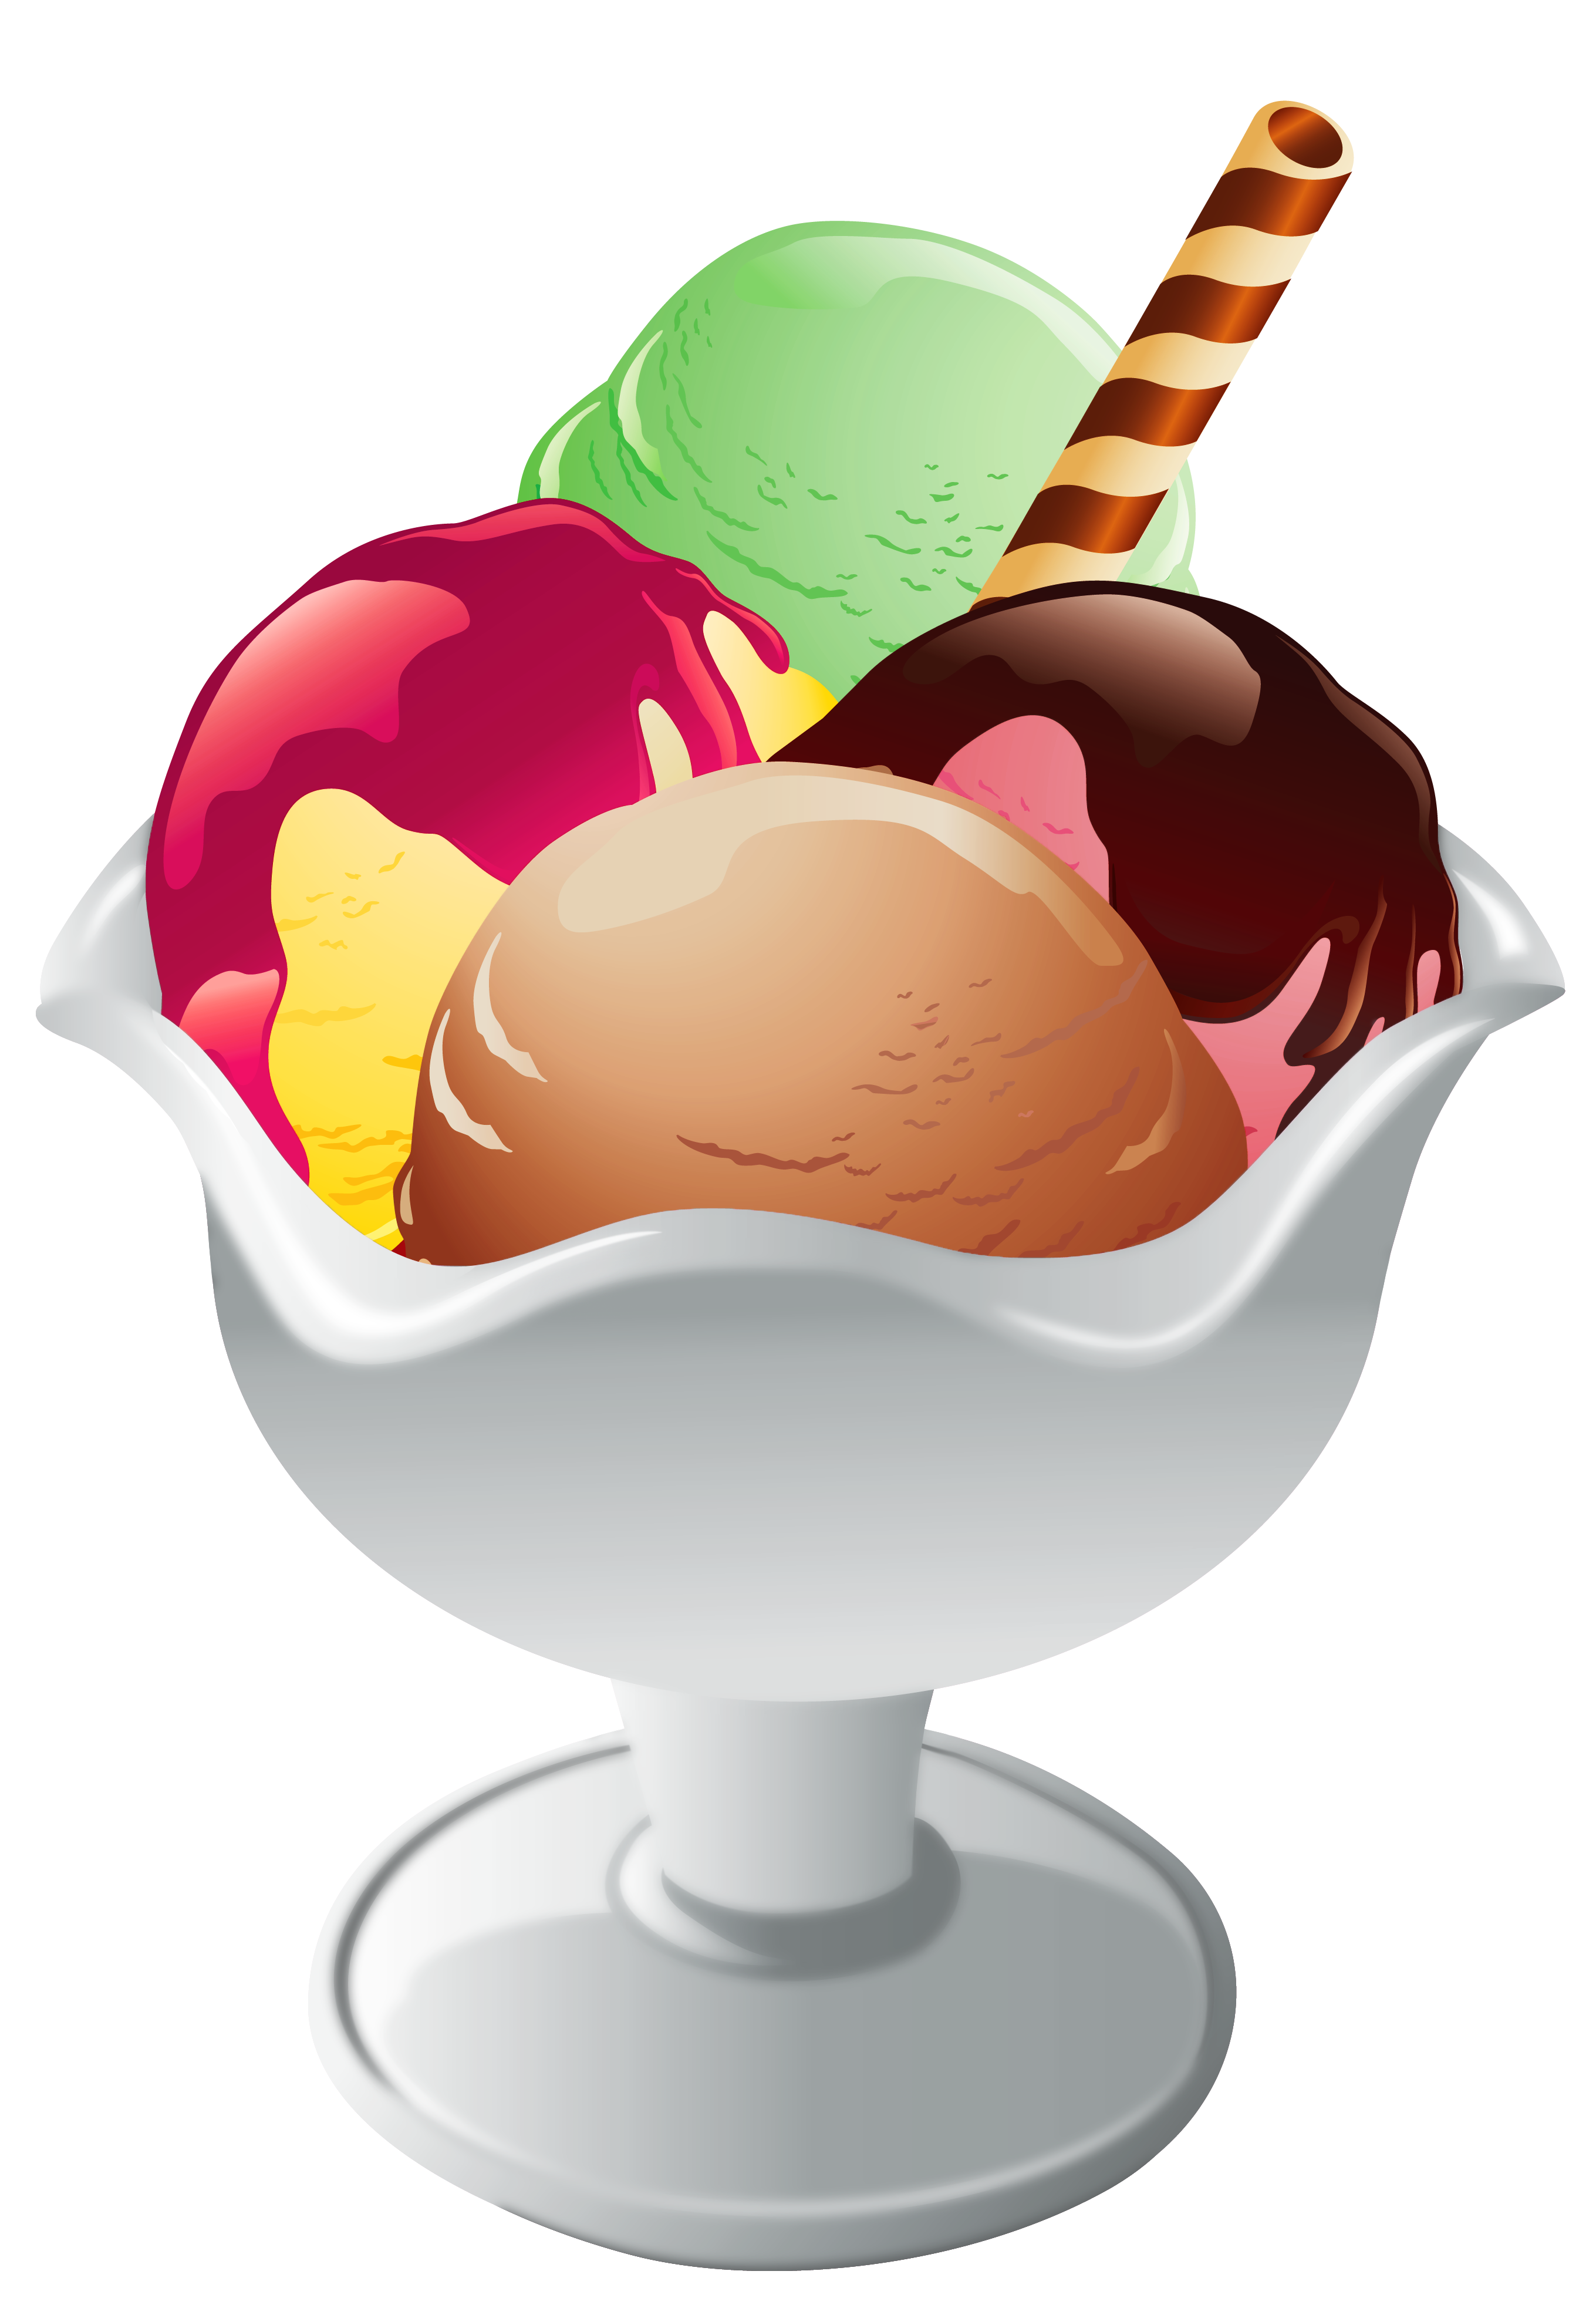 Ice cream sundae clipart images